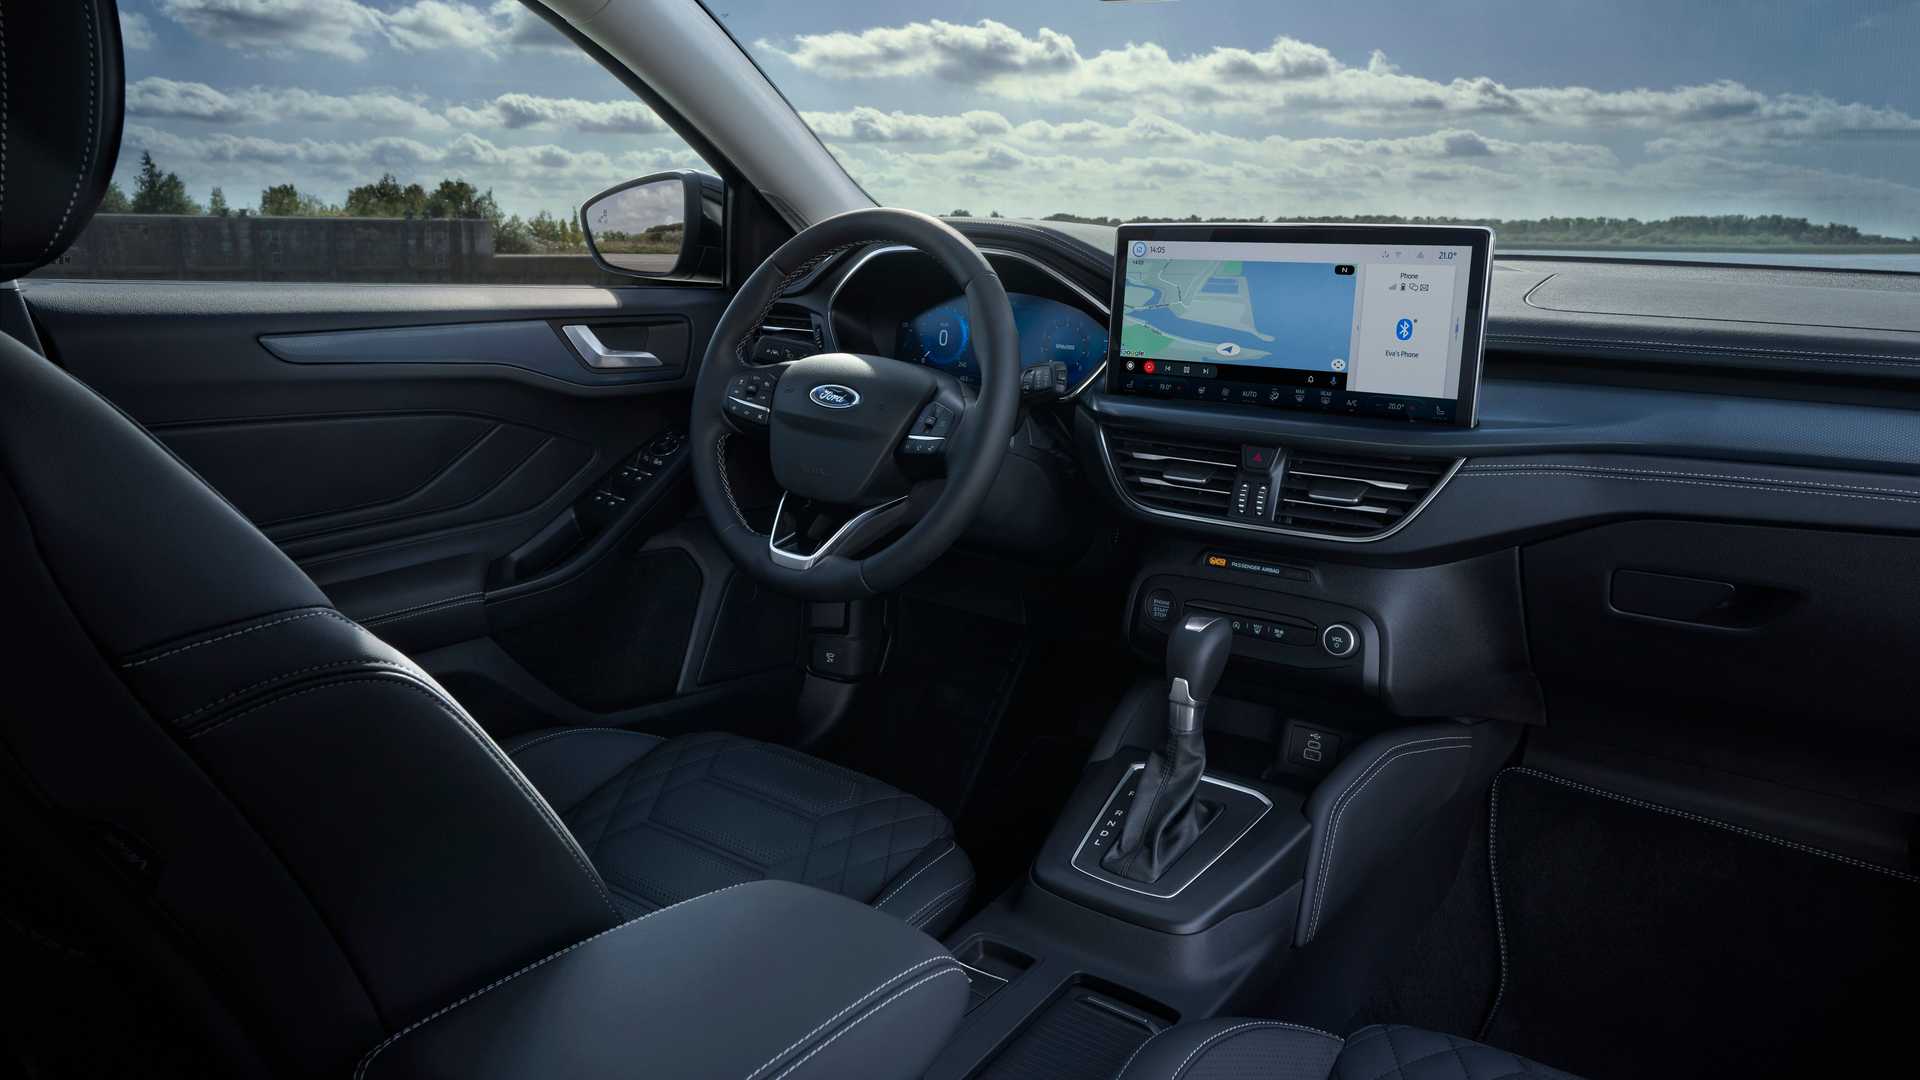 Siêu phẩm SUV của Ford lộ diện: Thiết kế đẹp chưa từng thấy, uy hiếp Honda CR-V và Mazda CX-5 ảnh 3